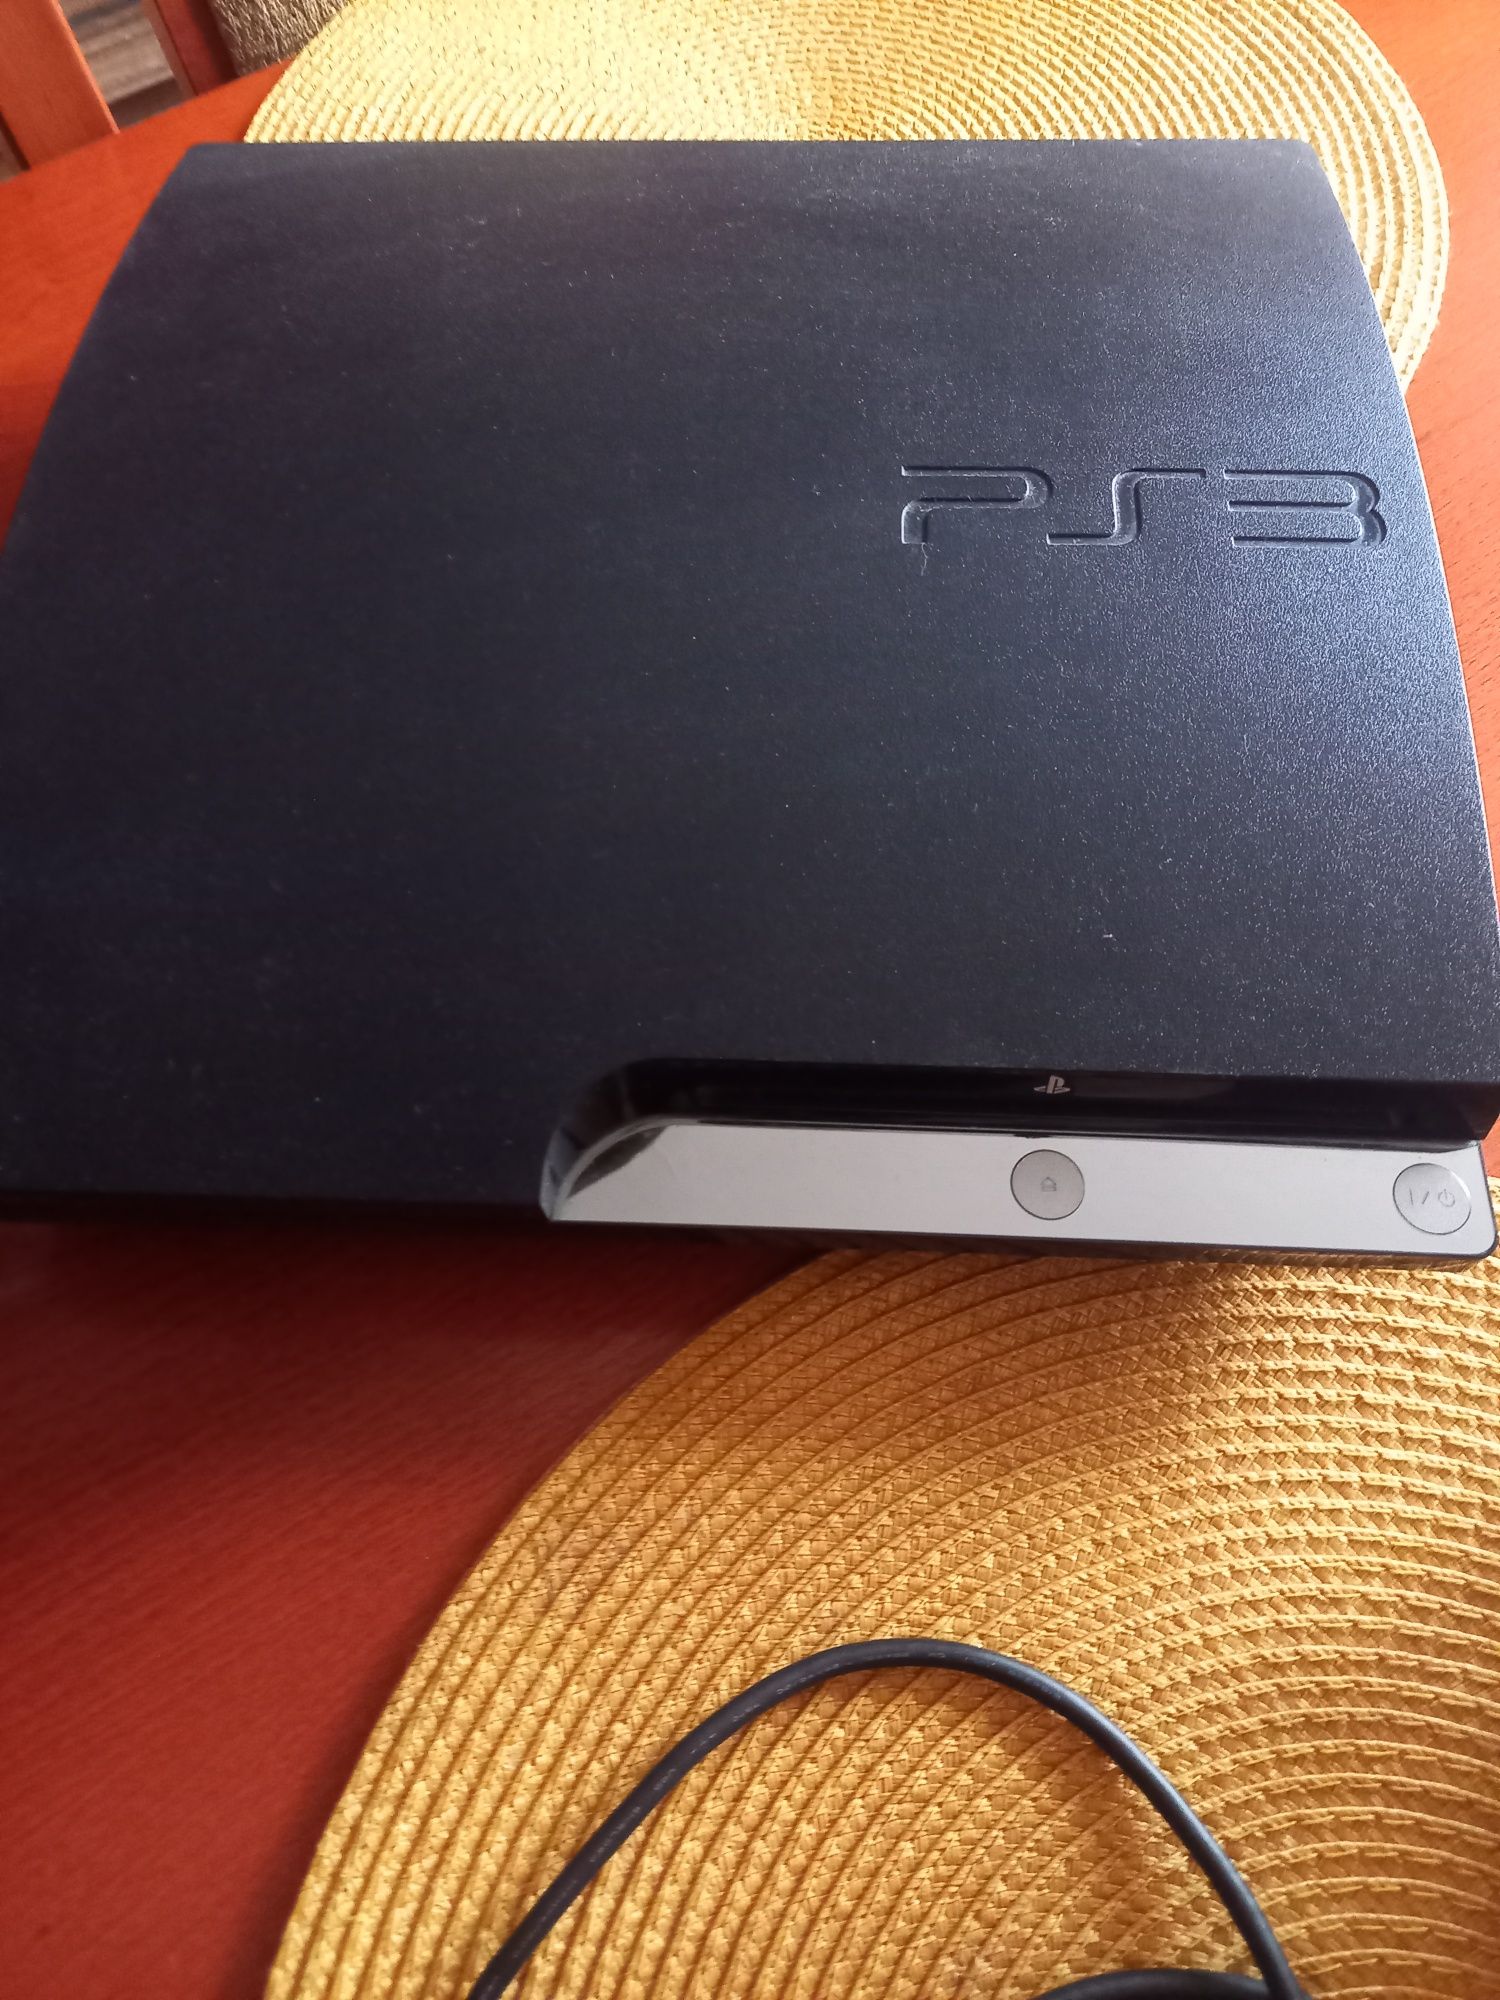 PS3 komplet 2 pady oryginał stacja ładujaca i zestaw gier Fifa i minec